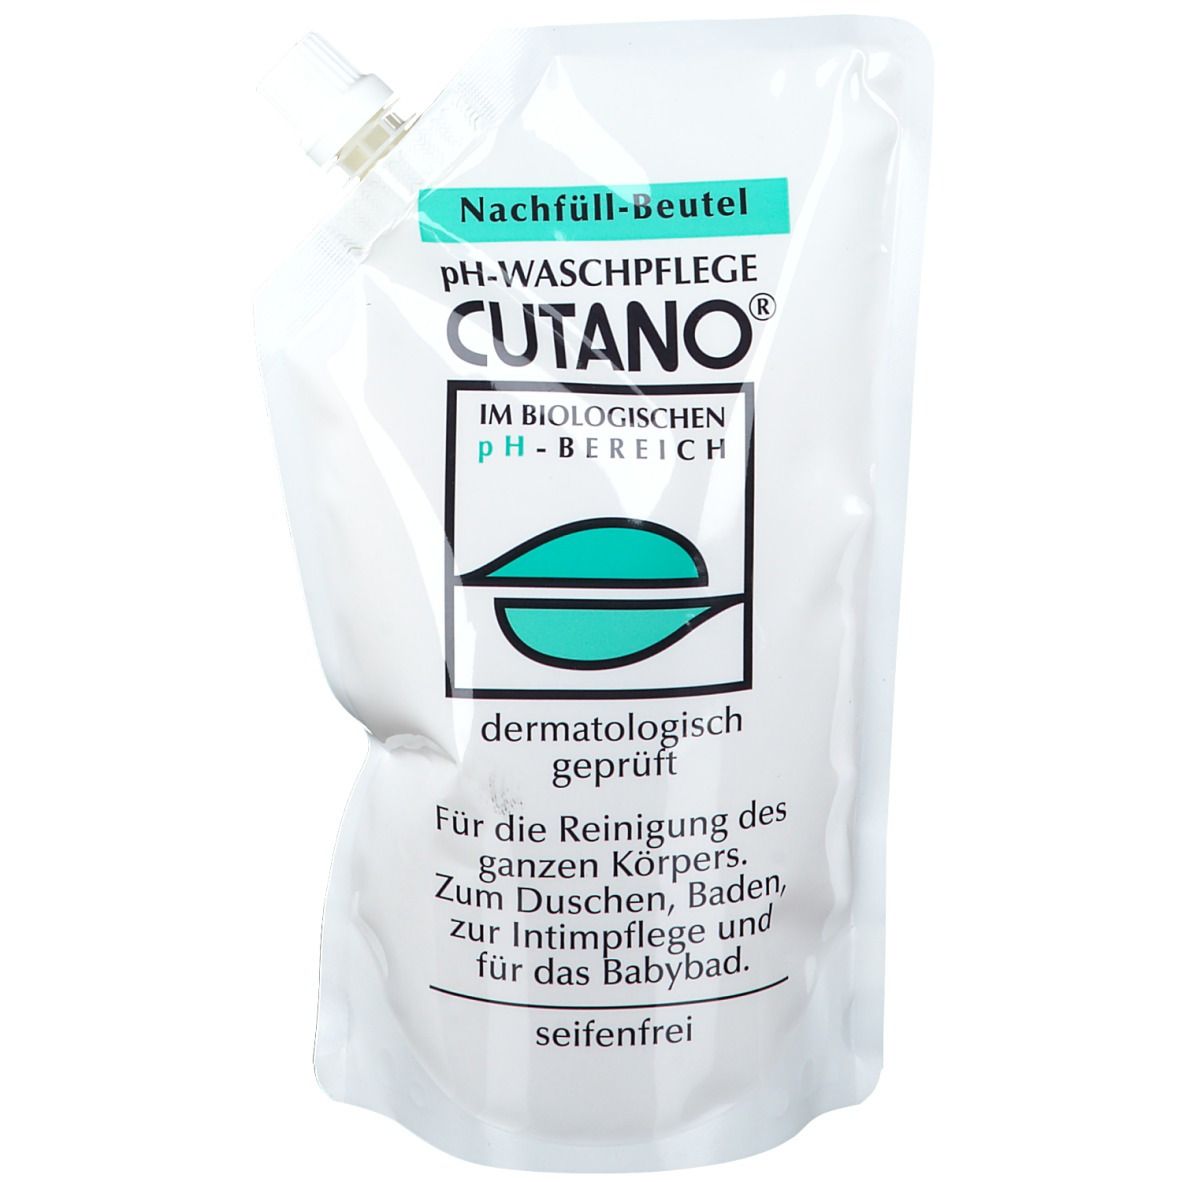 Cutano® pH-Waschpflege Nachfüllbeutel